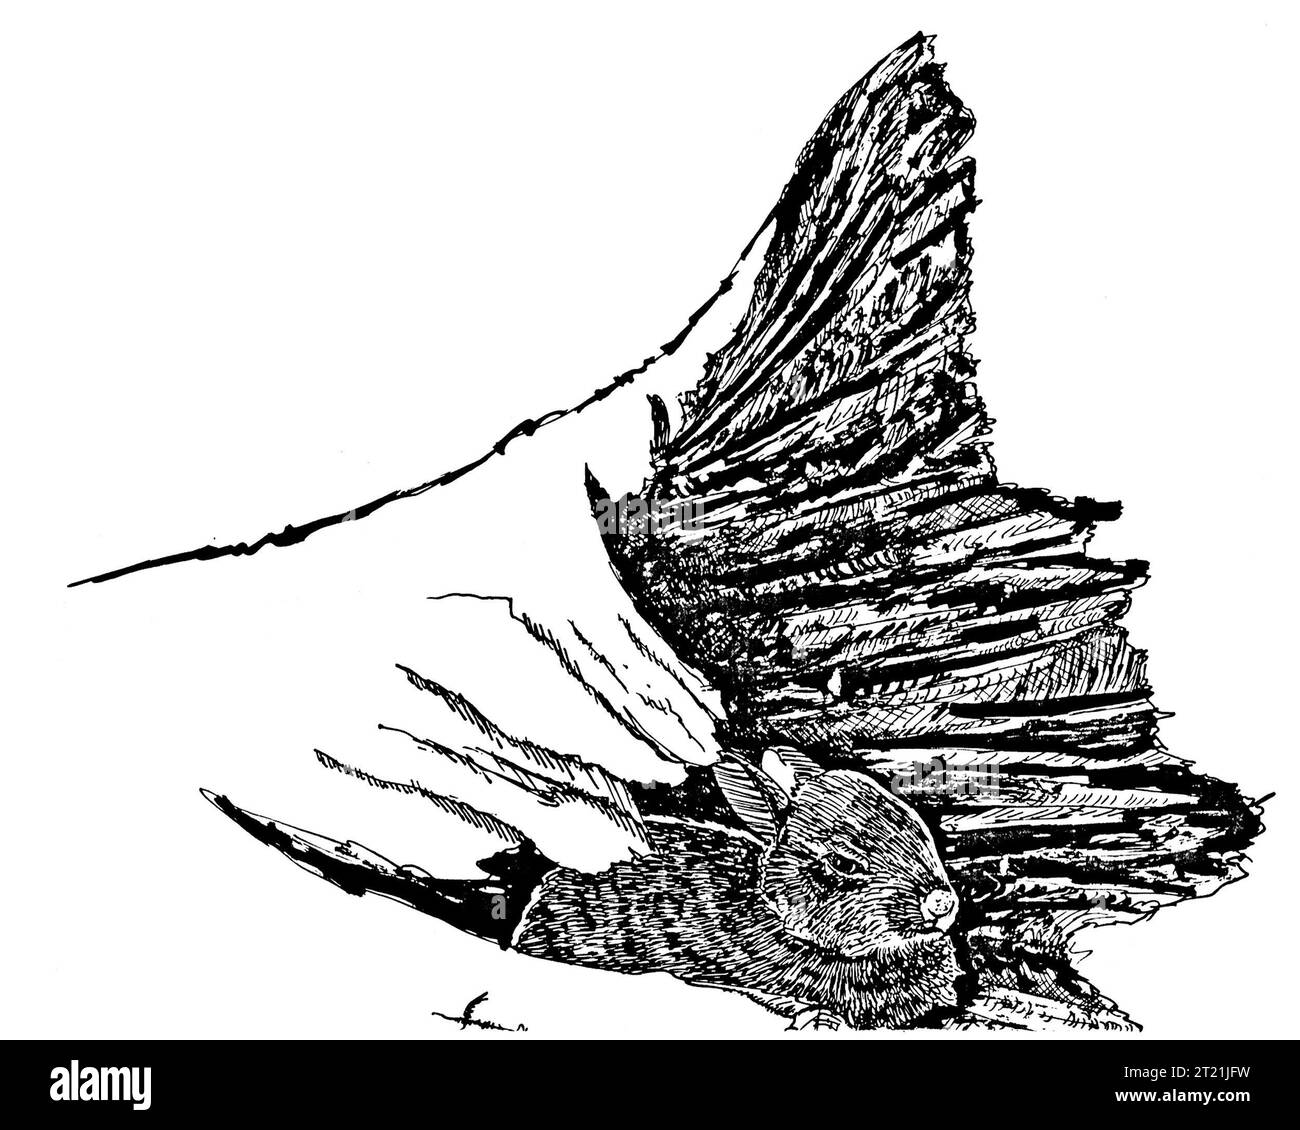 Leporidae. Créateur : Kelley, Tom. Sujets : lapins ; petits mammifères ; dessin au trait ; illustrations ; illustrations. . 1998 - 2011. Banque D'Images